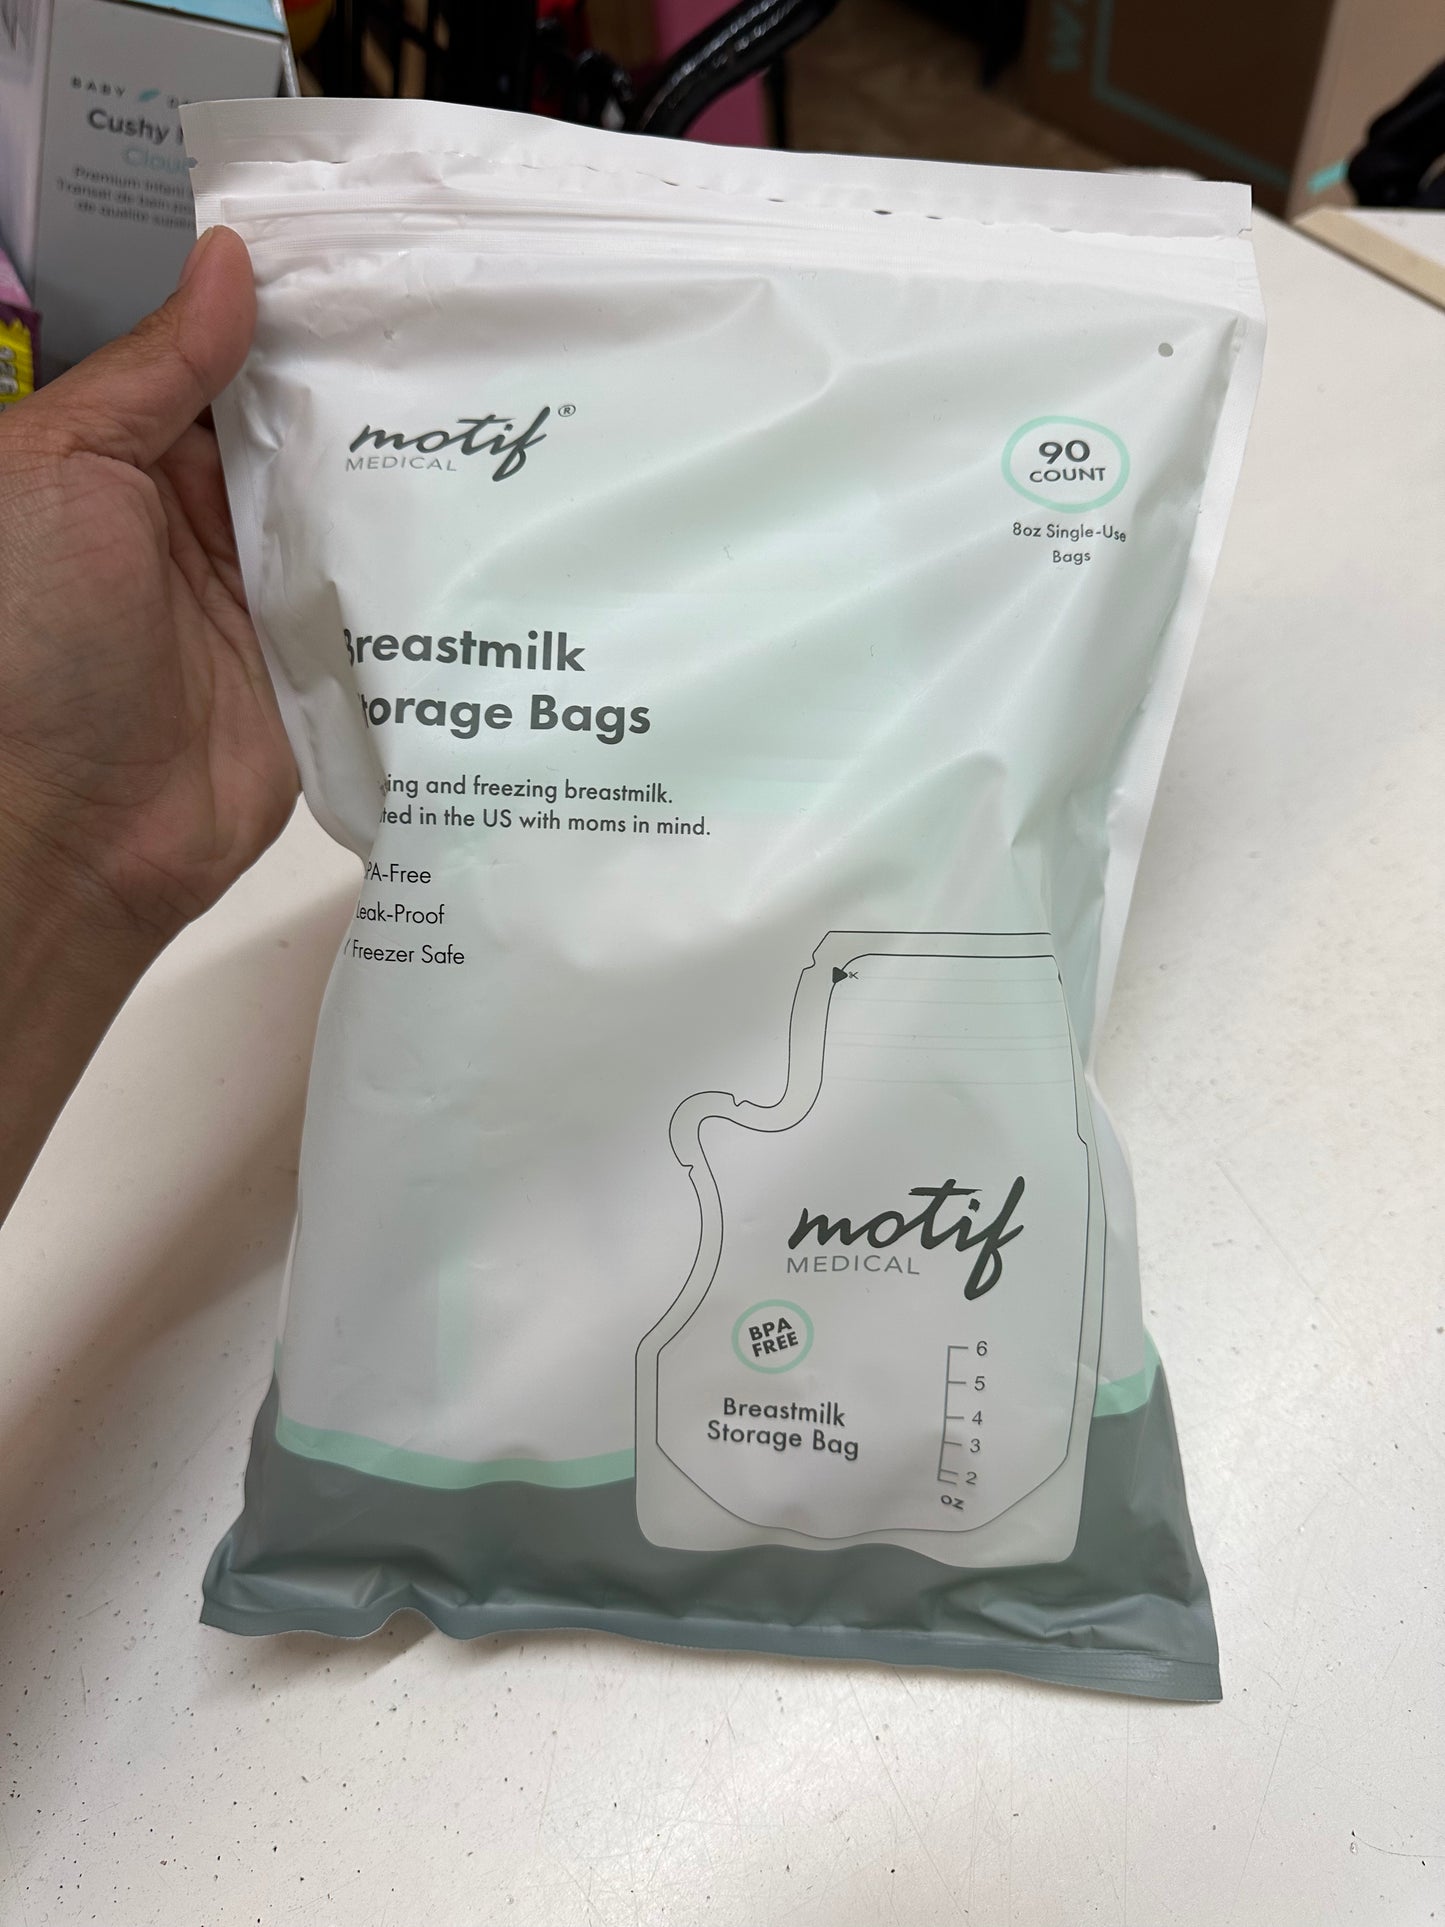 New Motif Breastmilk Storage Bags, 90 count